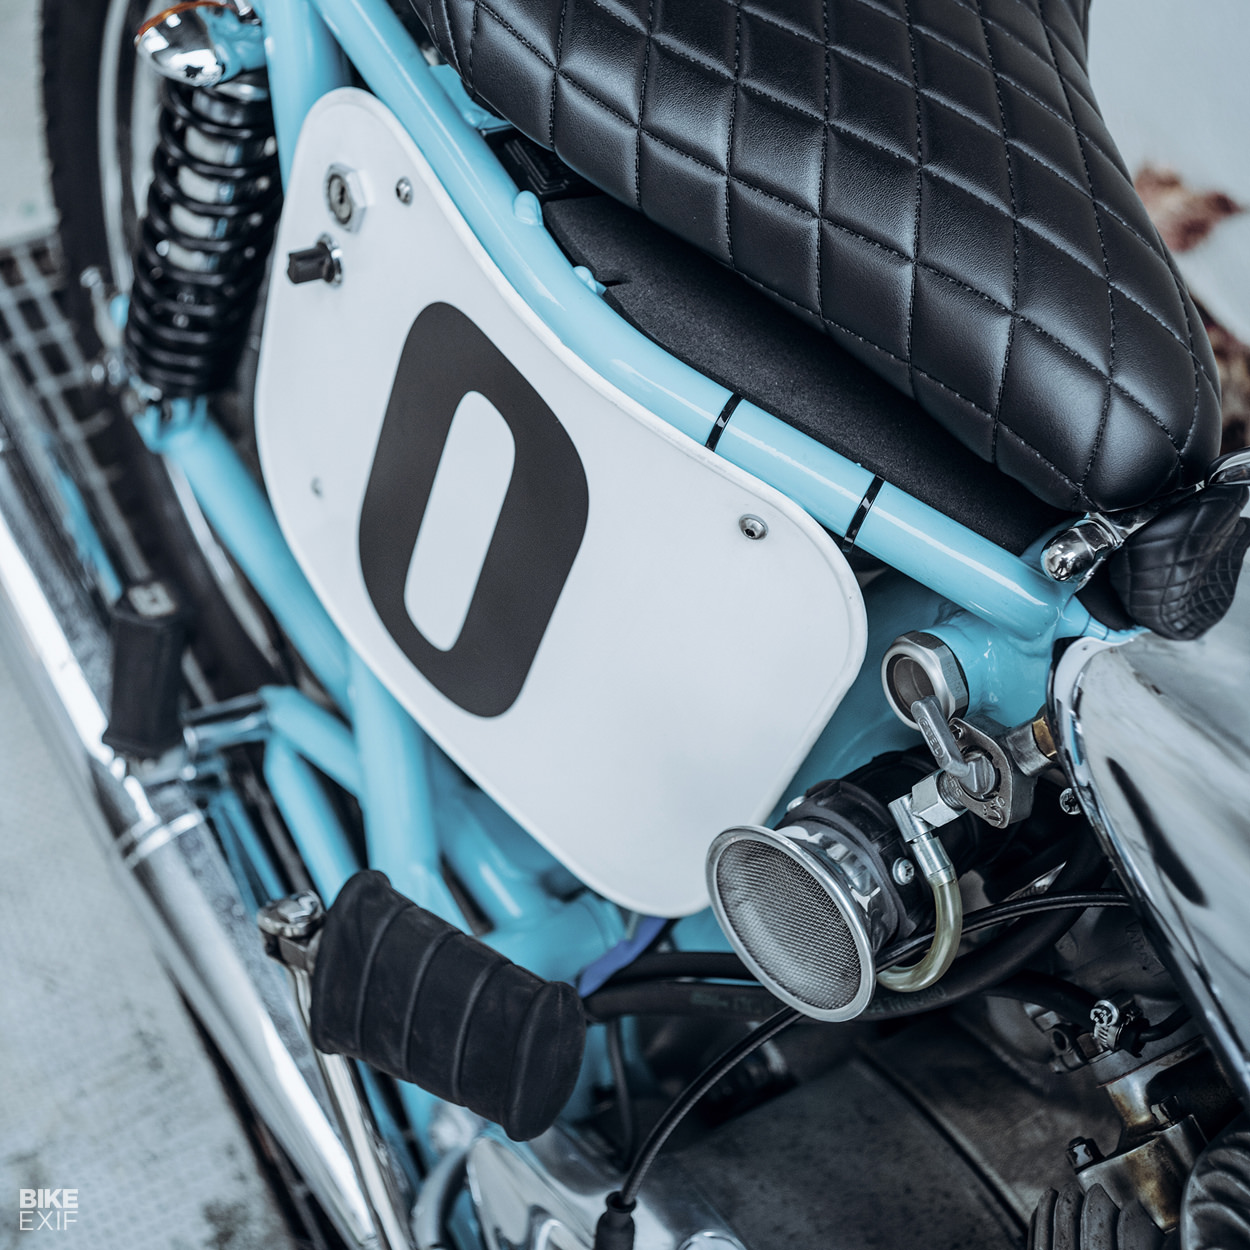 BSA Thunderbolt restomod by Soiatti Moto Classiche